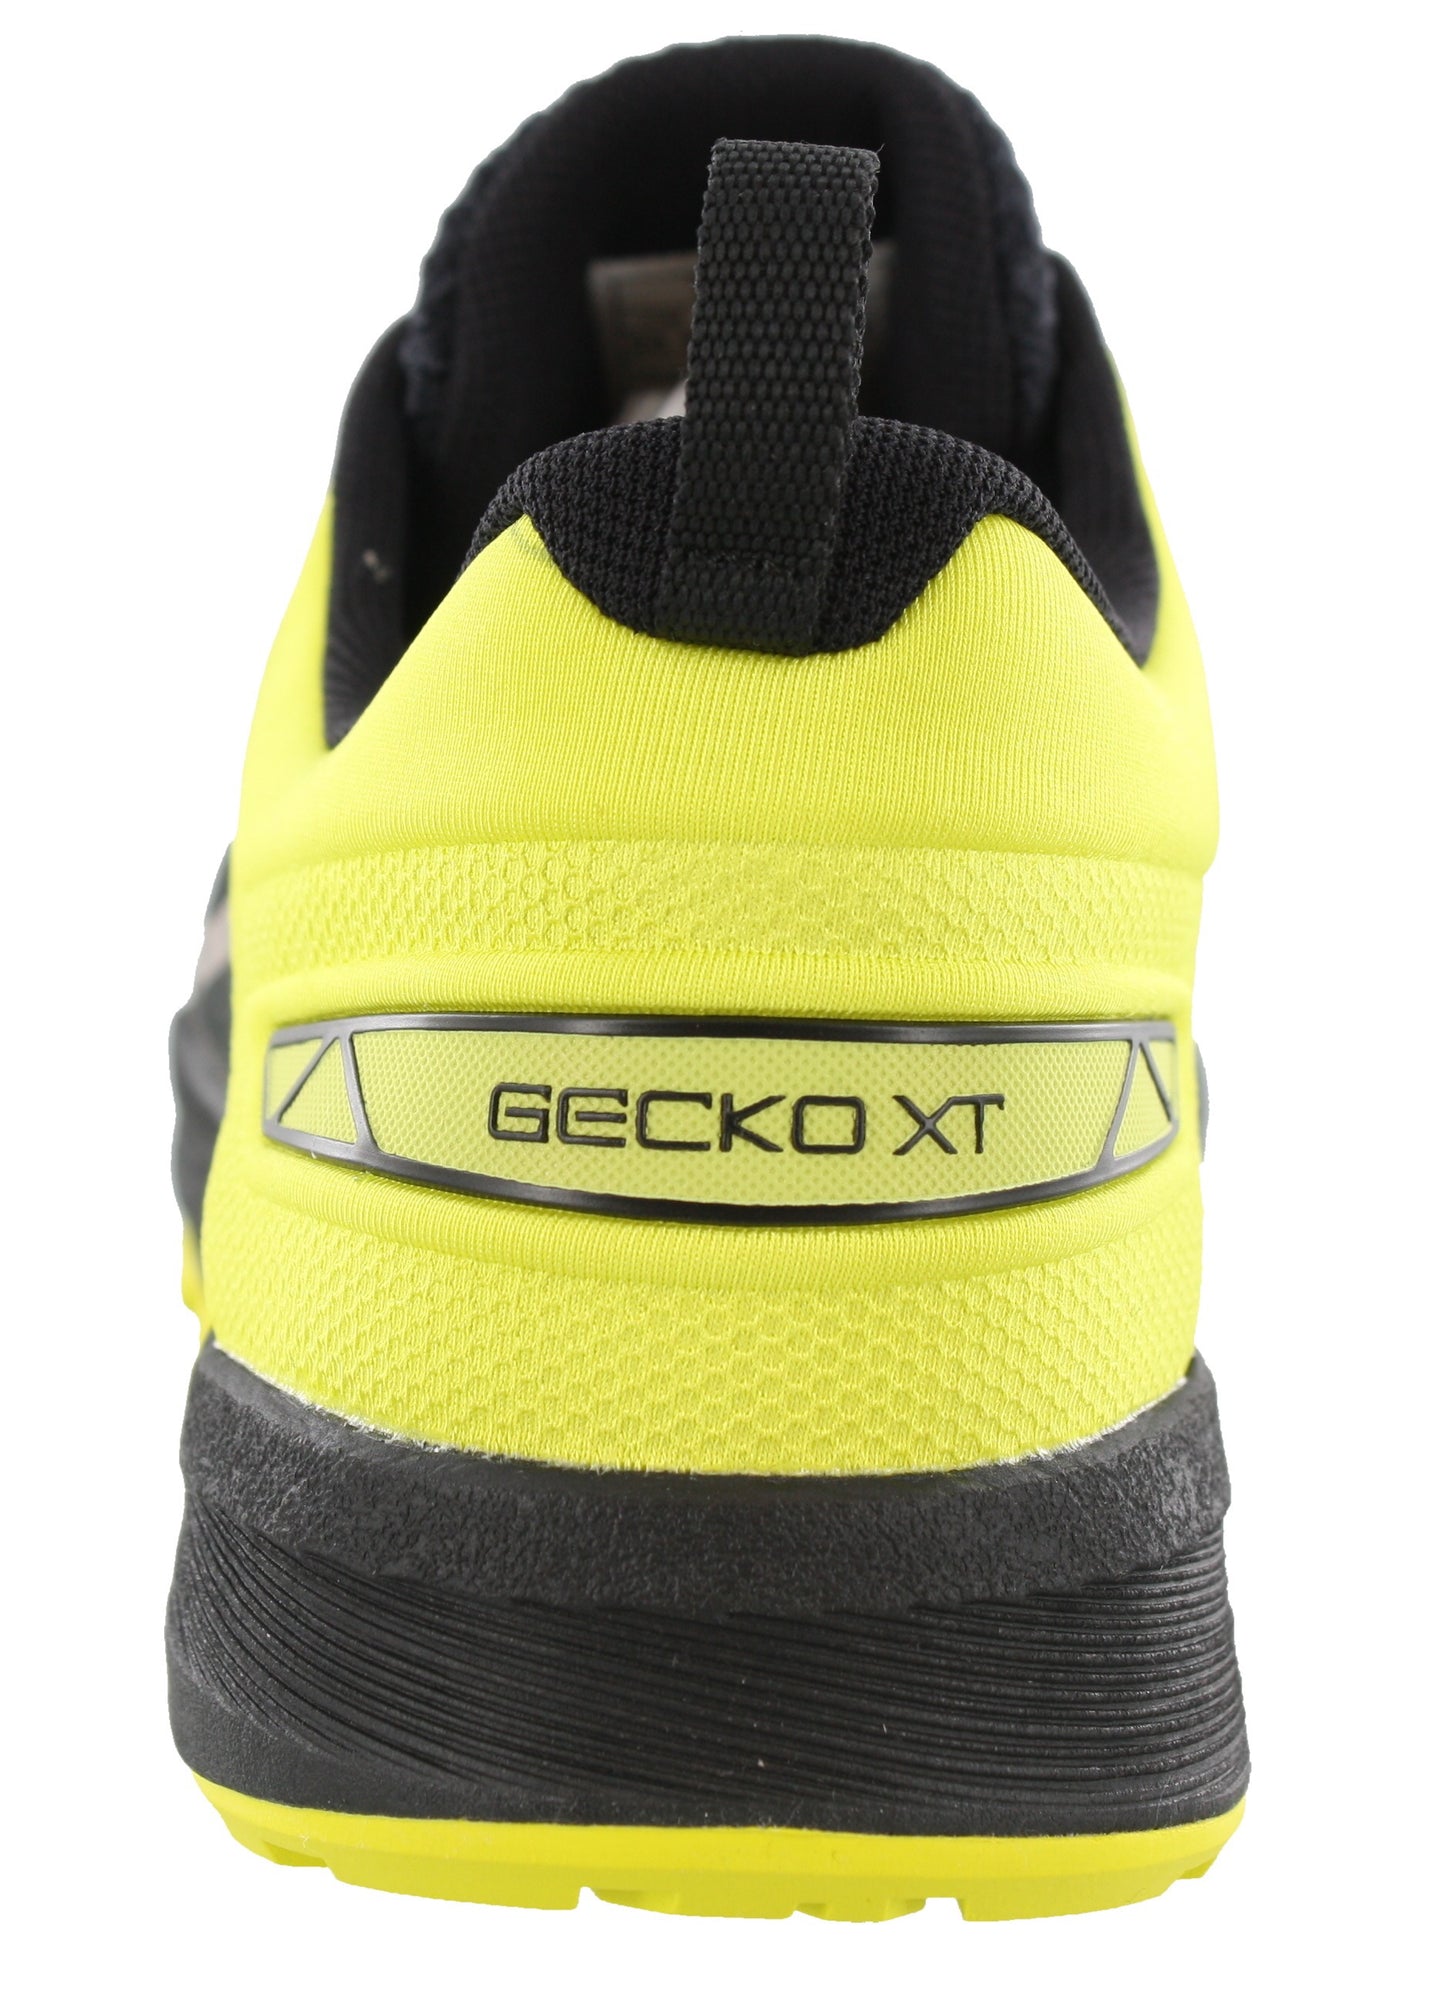 
                  
                    ASICS Shoes running Gecko XT - Men
                  
                